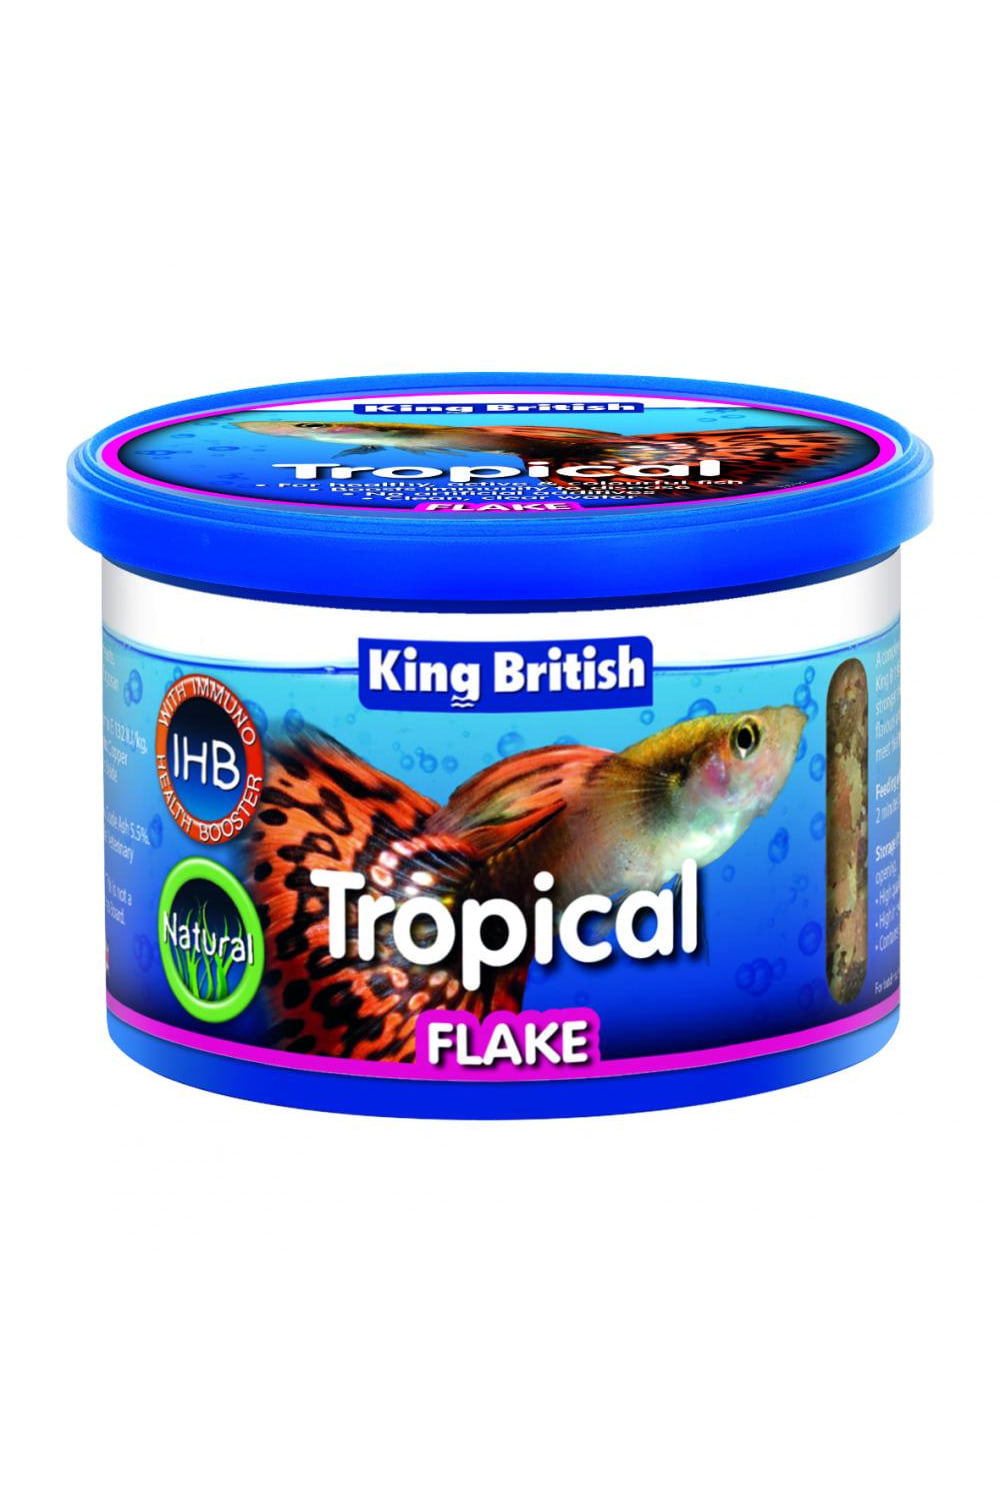 King British Tropical Fish Flake Food (May Vary) (1.9oz)